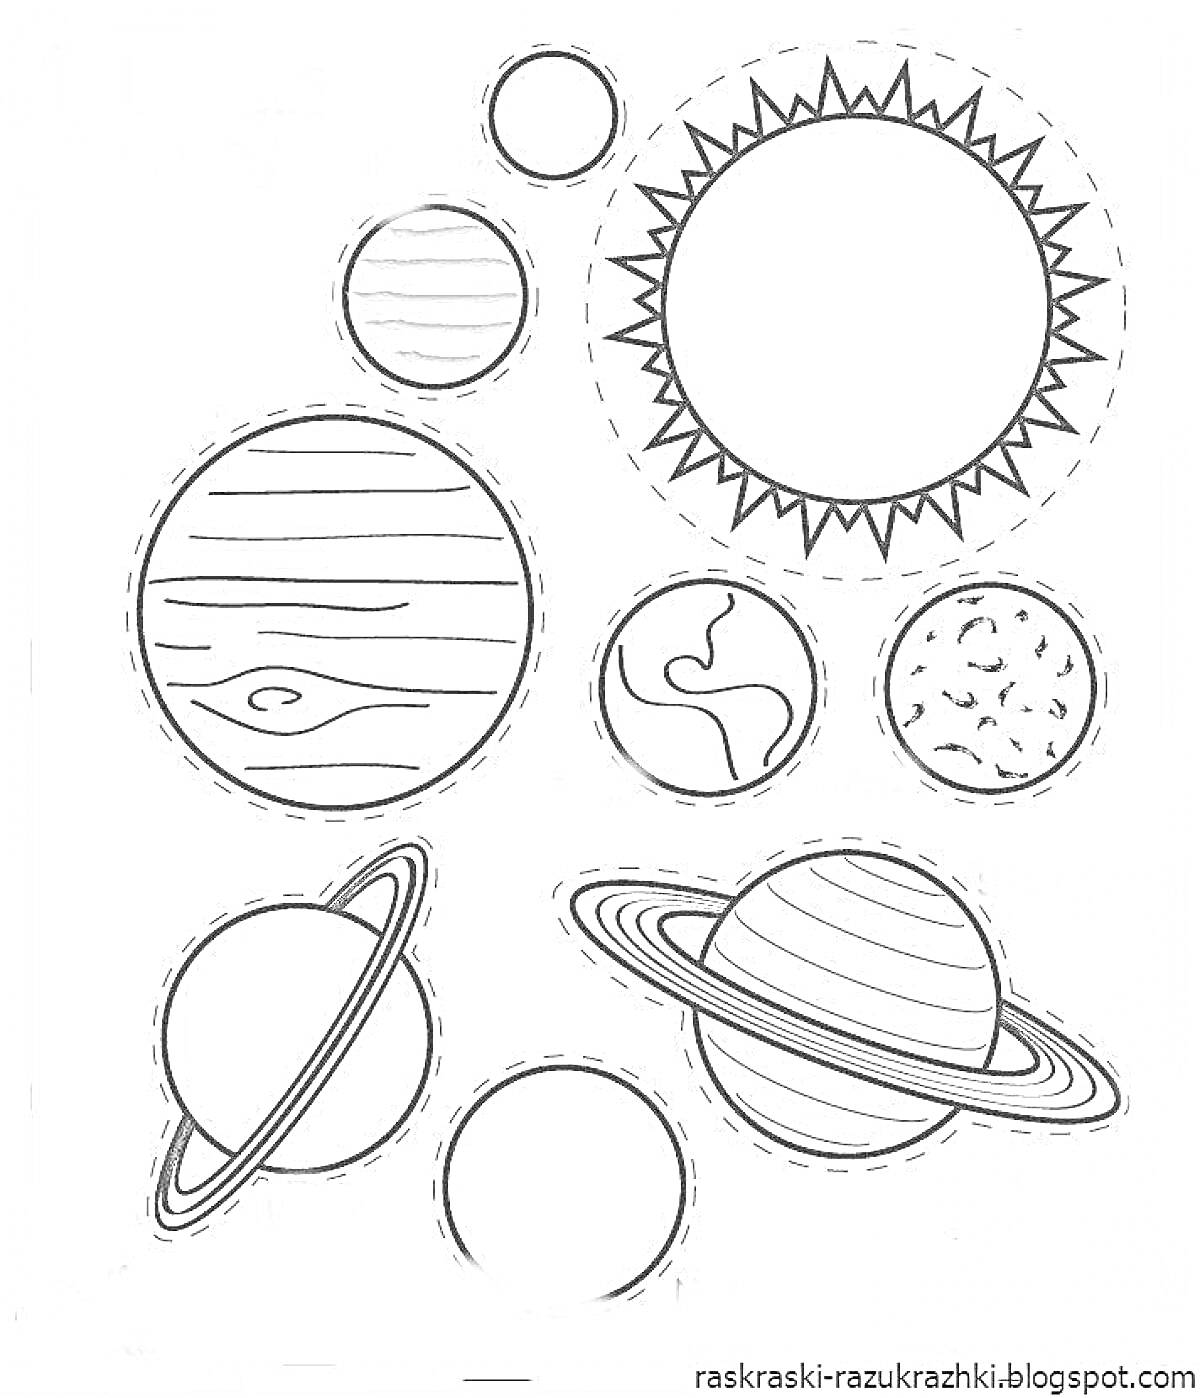 Раскраска Солнце, планеты и луны Солнечной системы: Солнце, восемь планет, пять спутников.